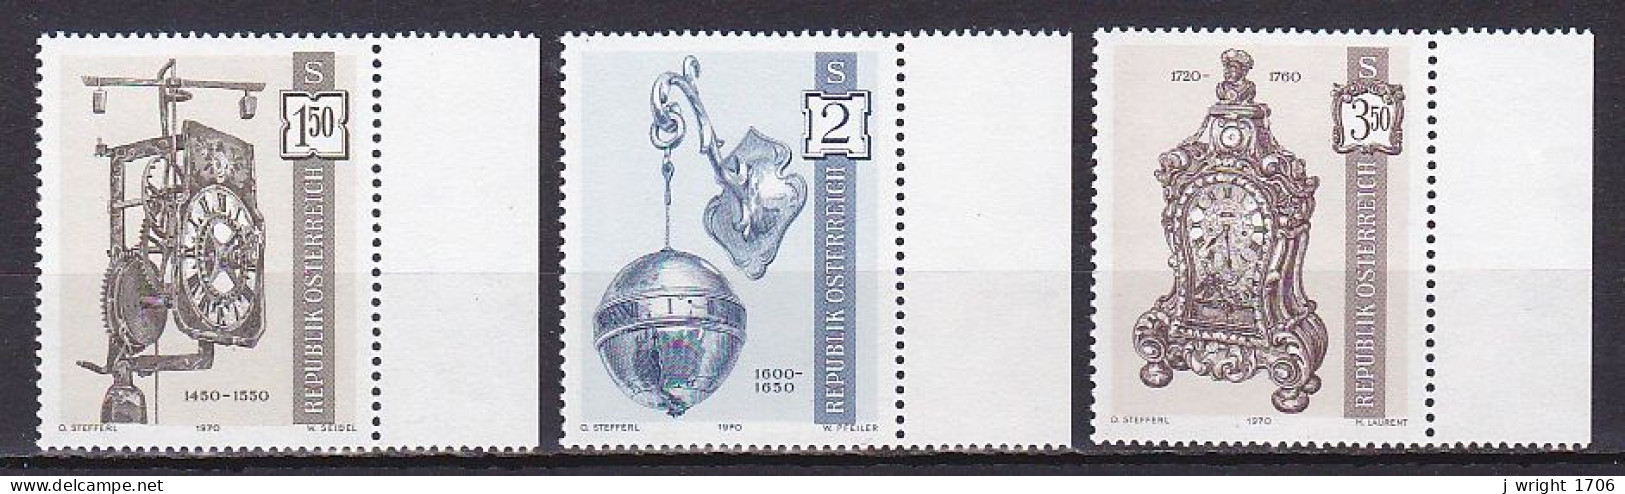 Austria, 1970, Antique Clocks 1st Issue, Set, MNH - Unused Stamps